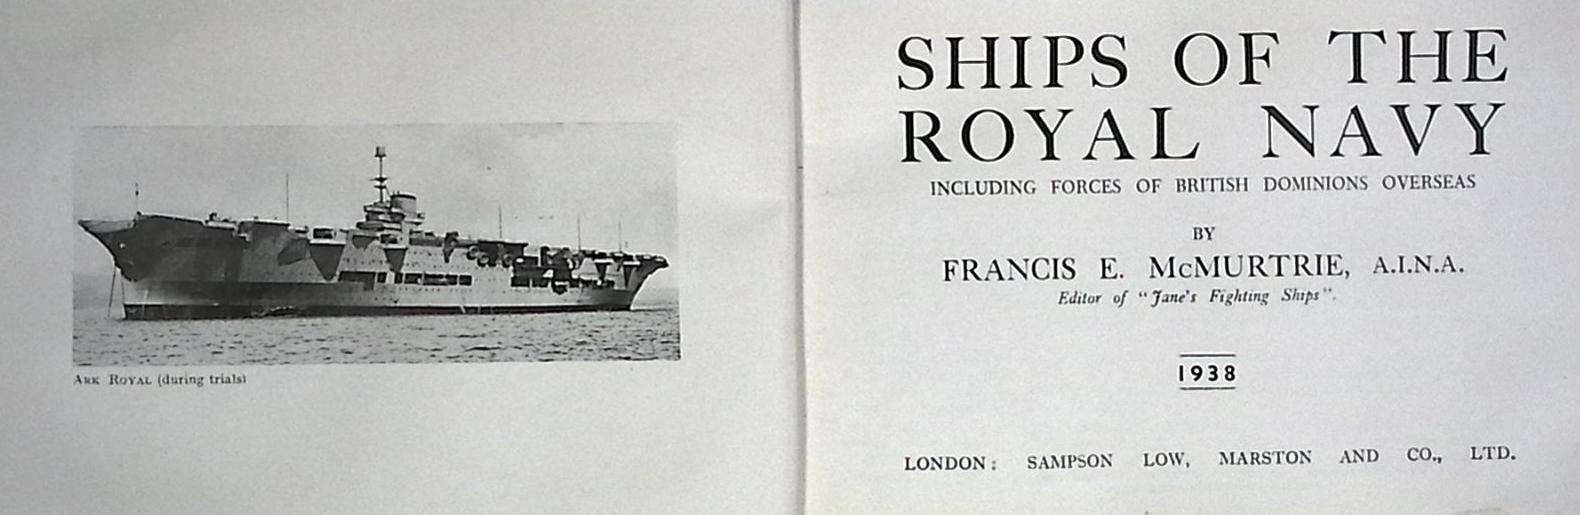 Ships of the Royal Navy. 1938.